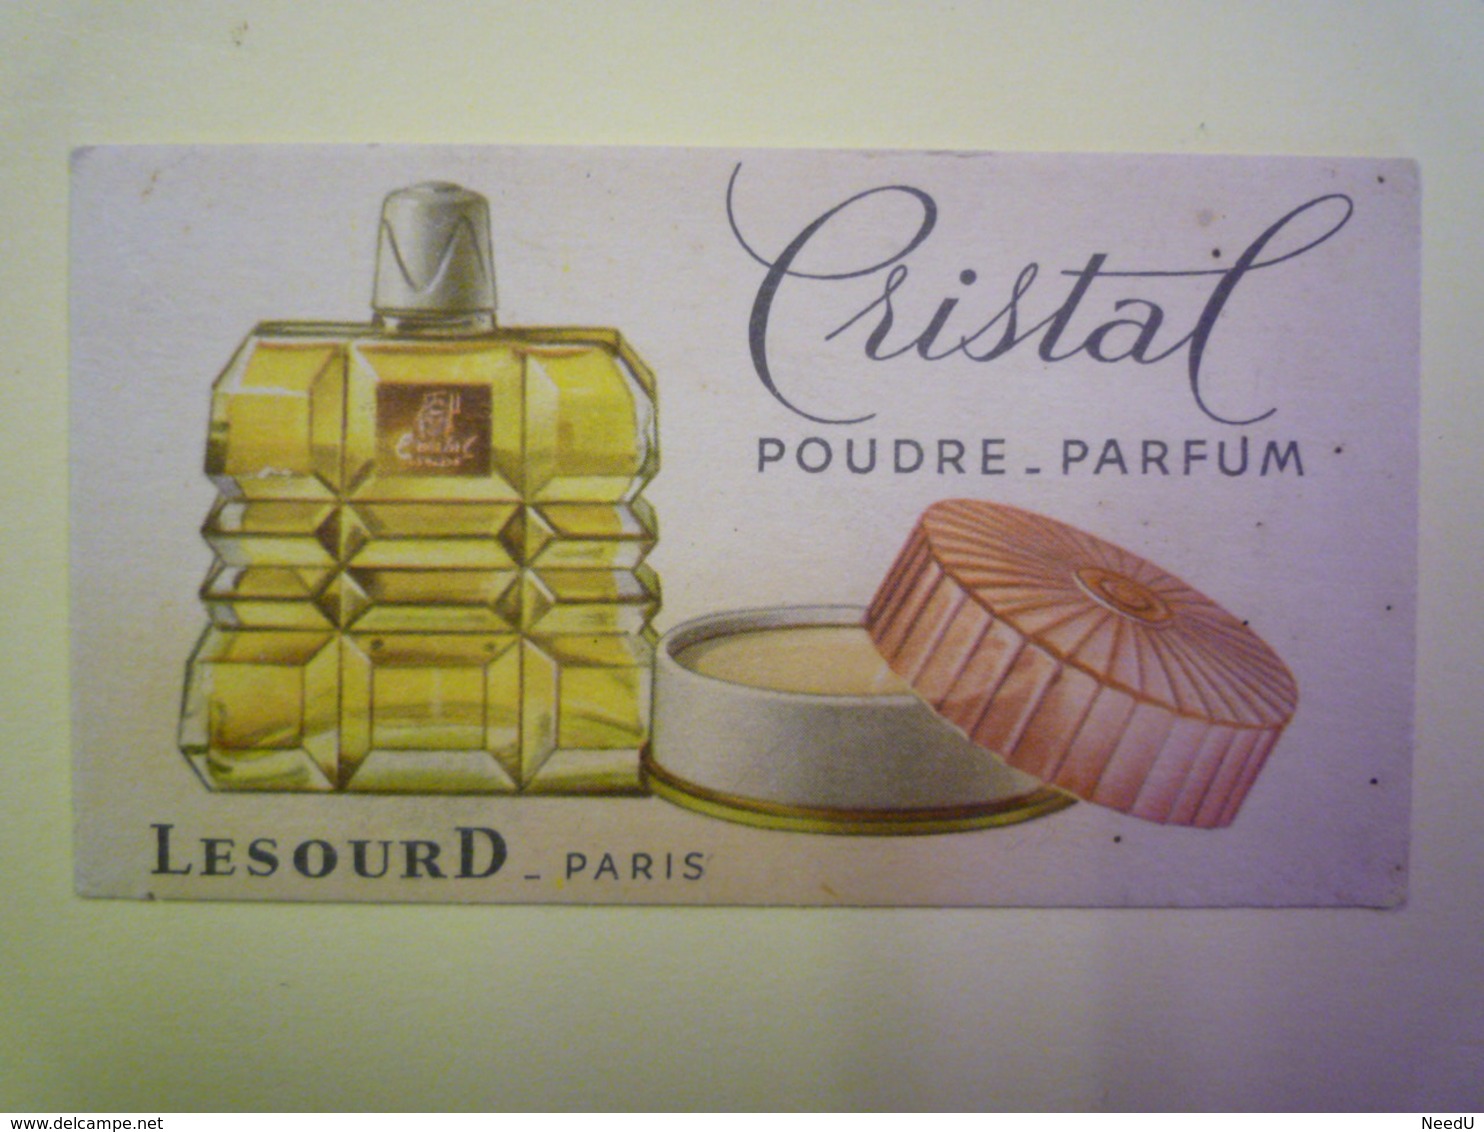 GP 2019 - 1267  CARTE Parfumée  "CRISTAL"  Poudre - Parfum  (LESOURD  -  Paris)   XXX - Vintage (until 1960)